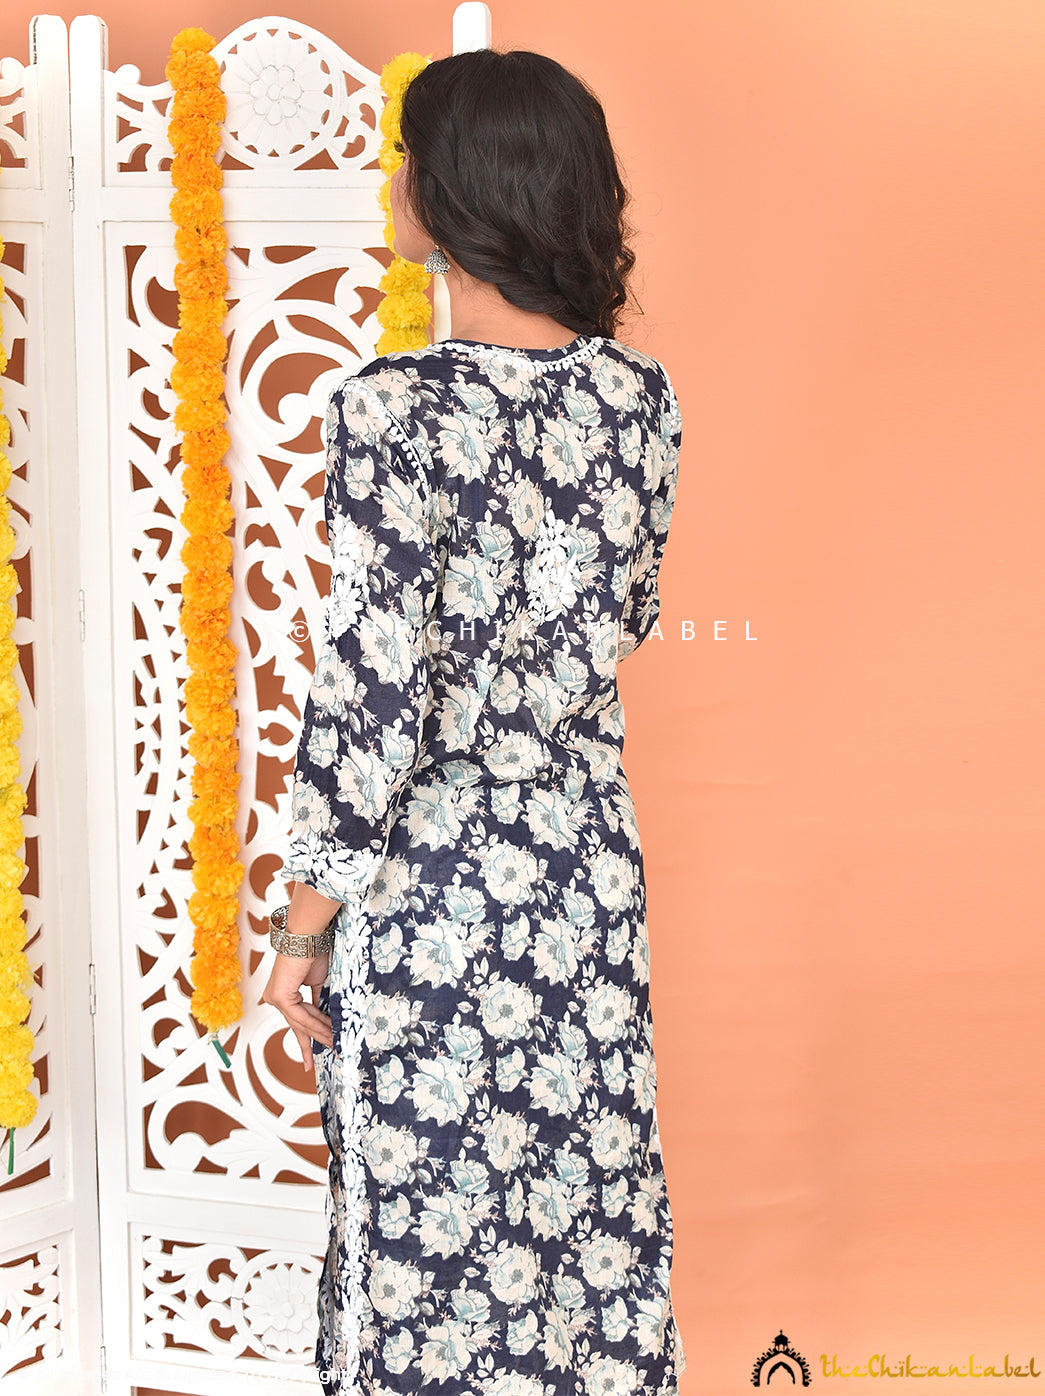 Buy chikankari kurti palazzo set online at best prices, Shop authentic Lucknow chikankari handmade kurta kurti palazzo set in mulmul fabric for women 3